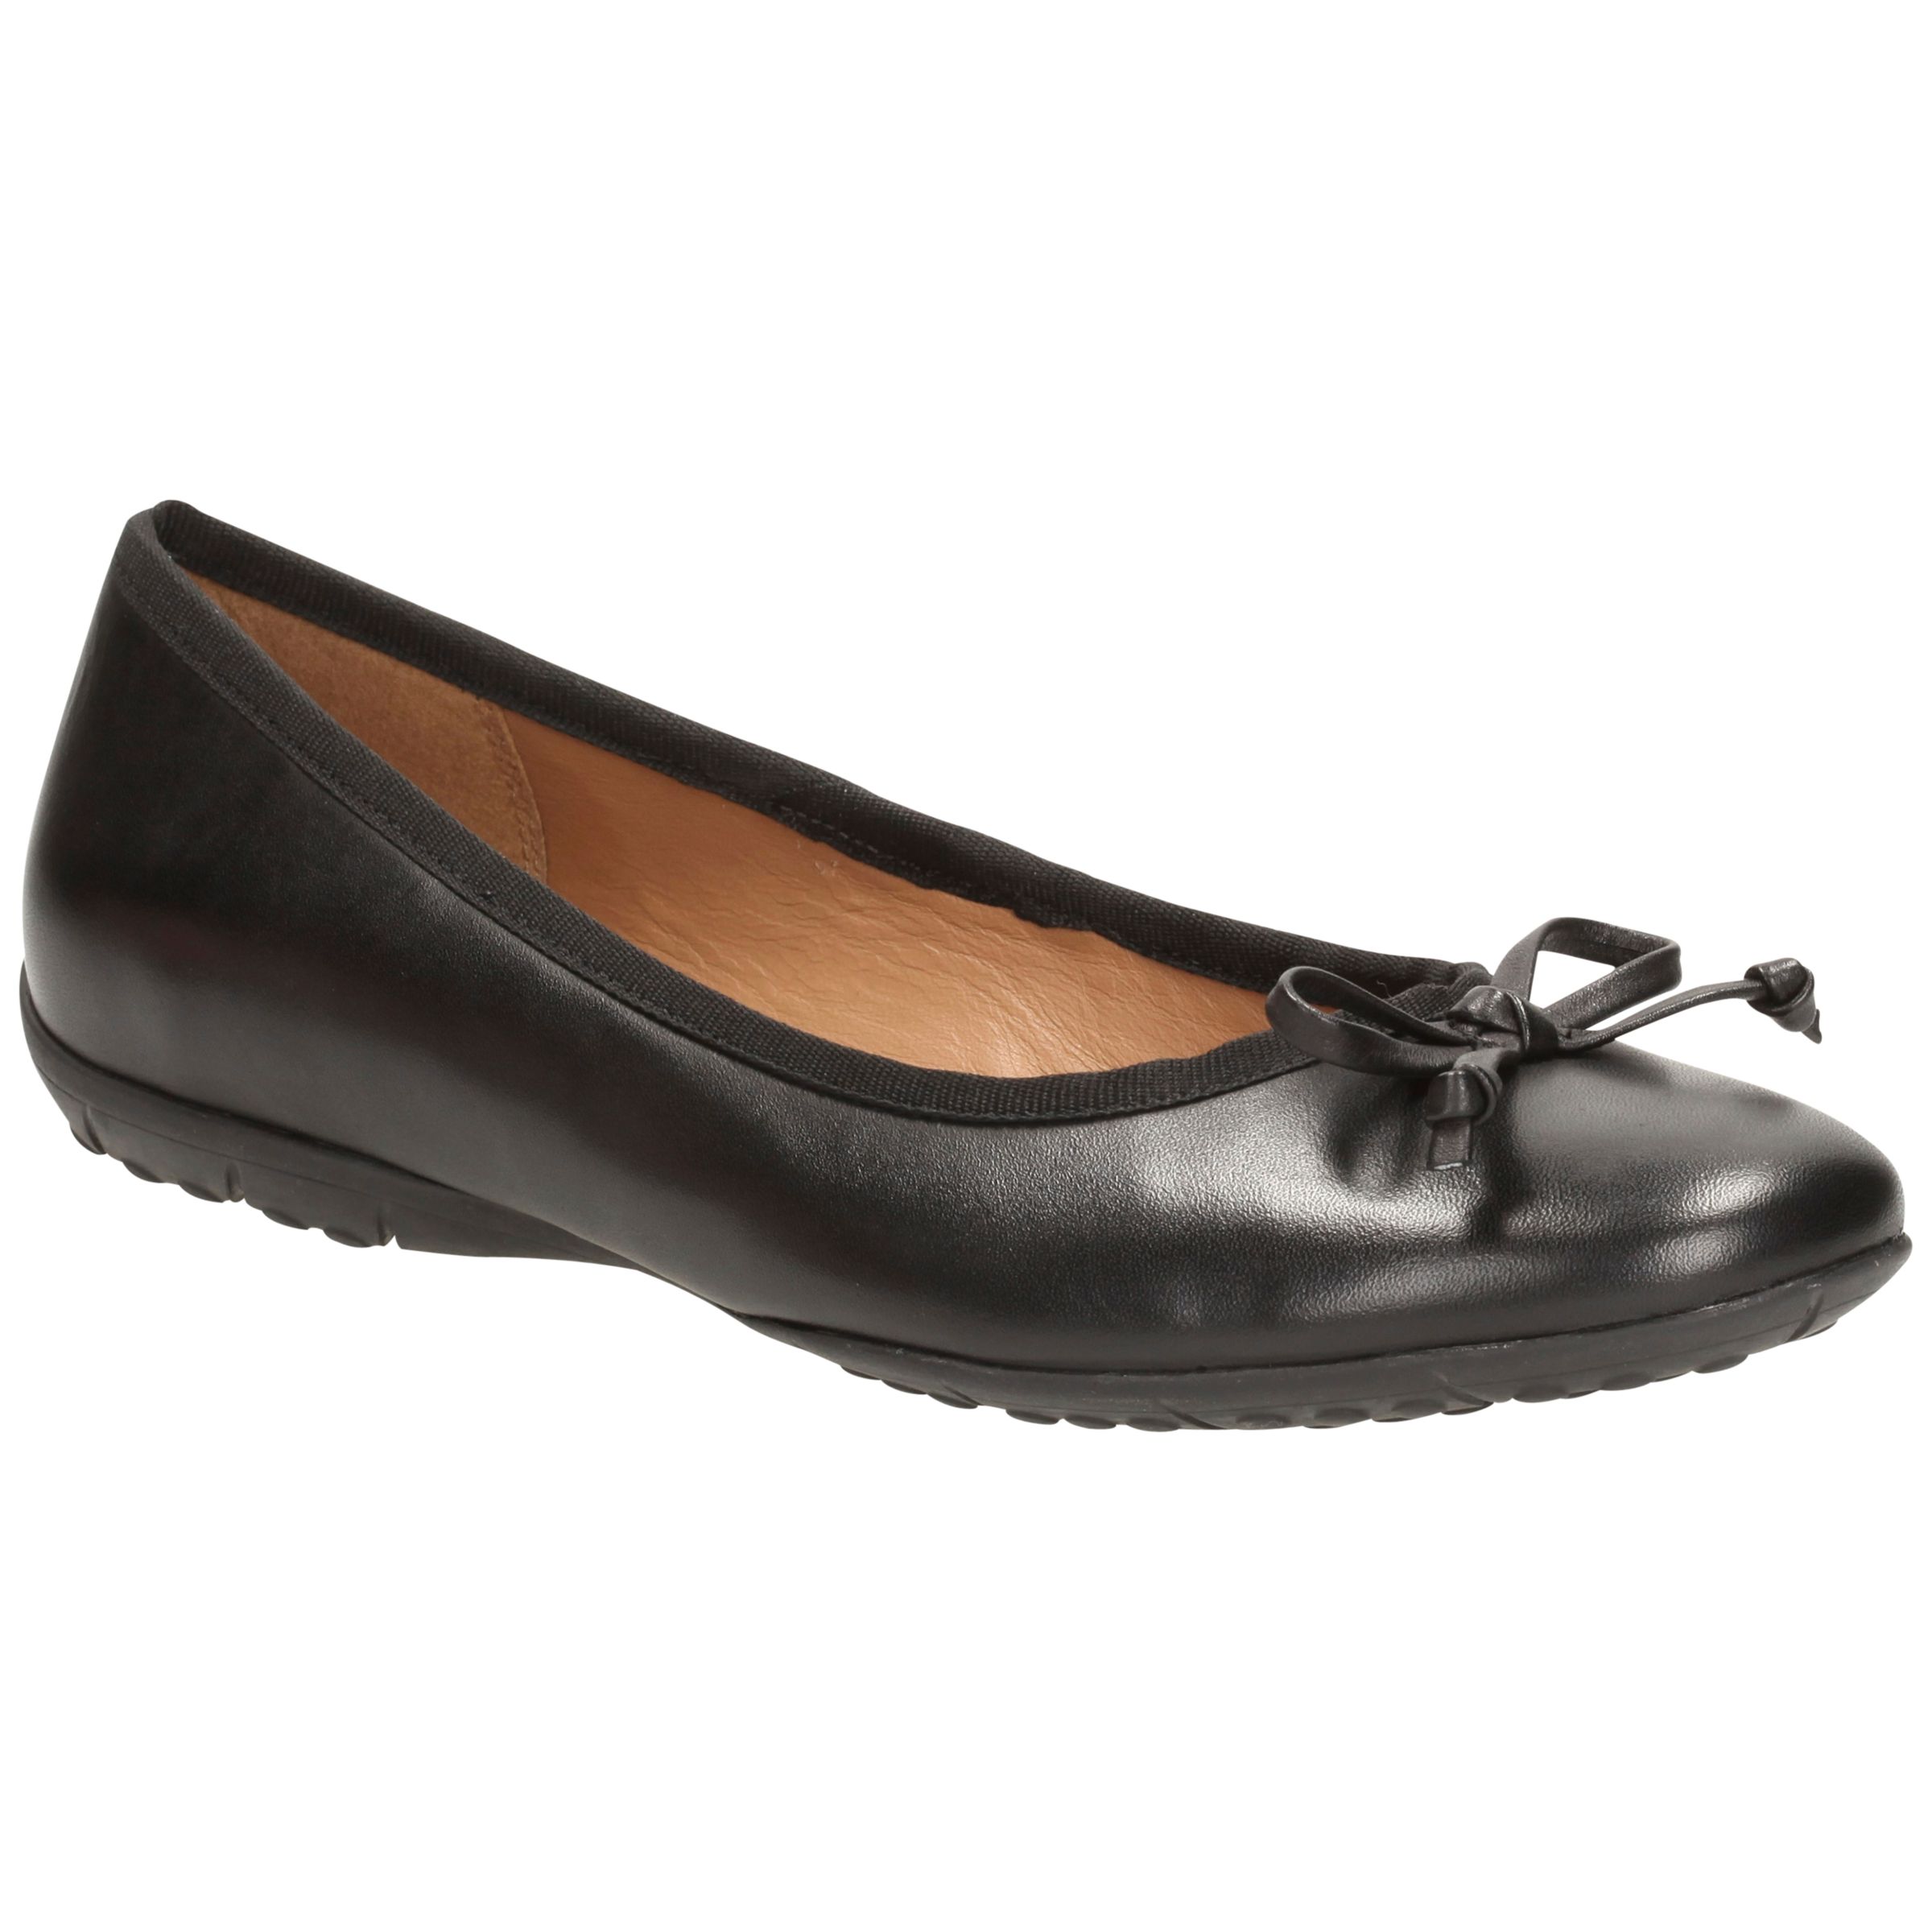 Clarks Arizona Ballet Leather Pump Shoes, Black